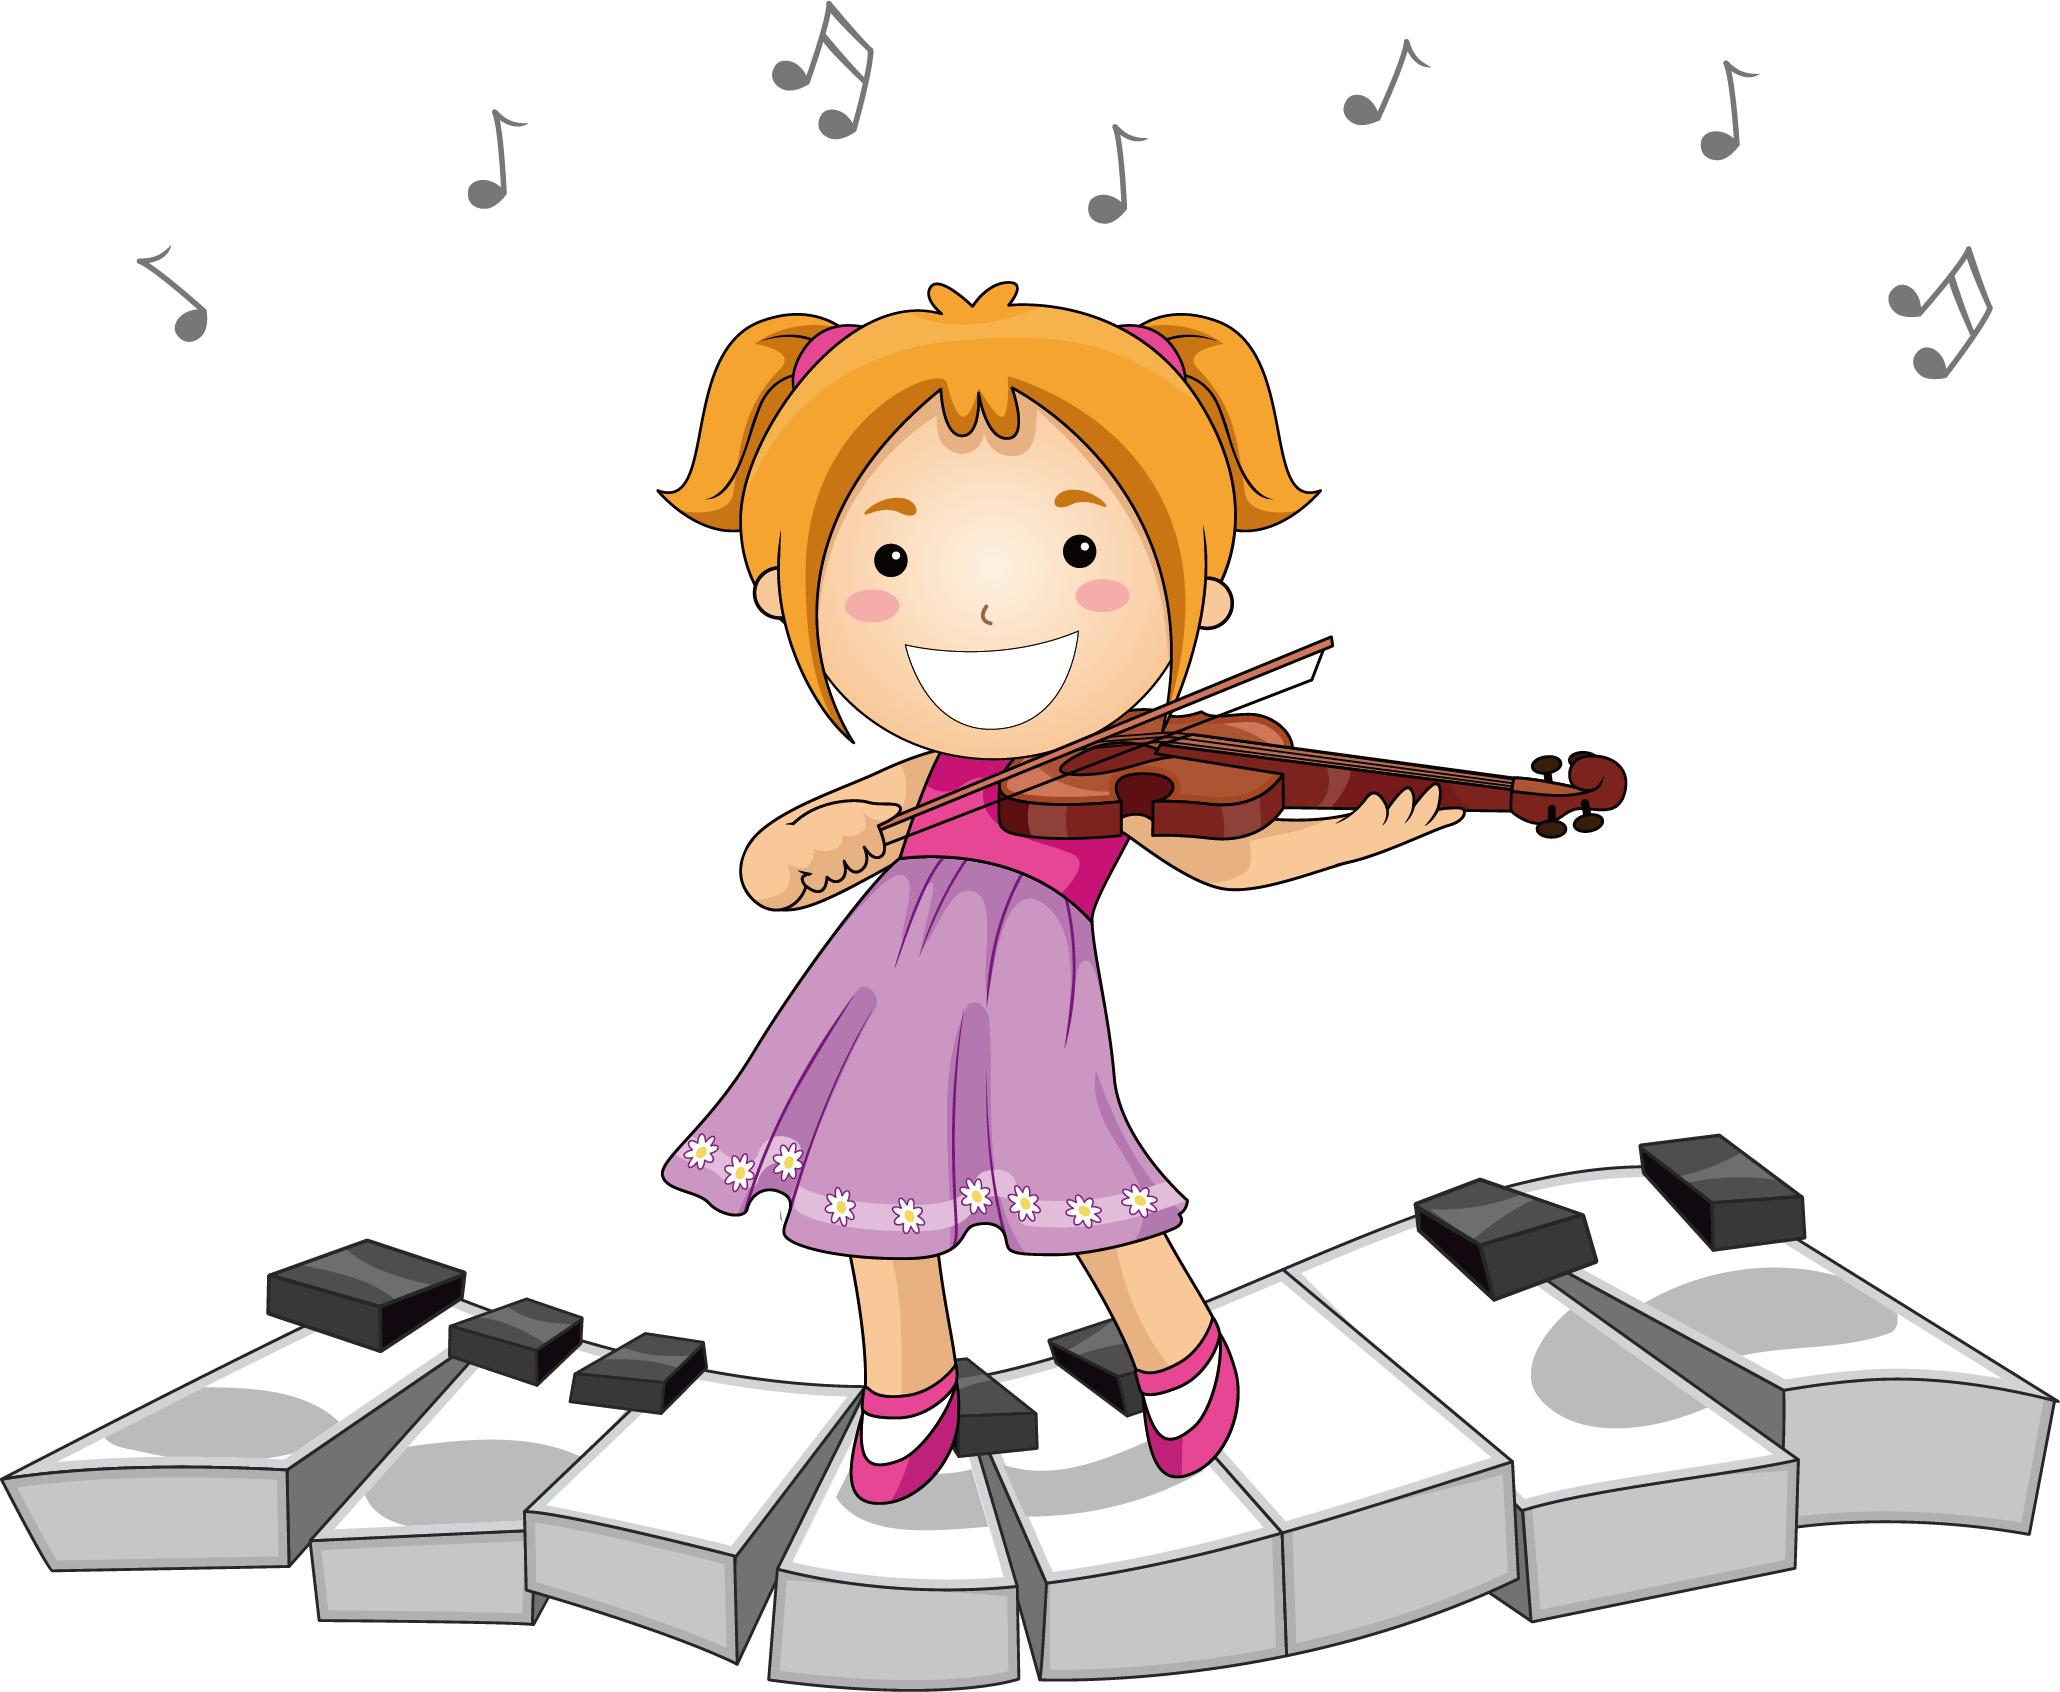 Найти песенки петь. Музыкальные инструменты для детей. Музыкальный рисунок для детей. Мультяшные музыканты. Девочка с музыкальным инструментом.